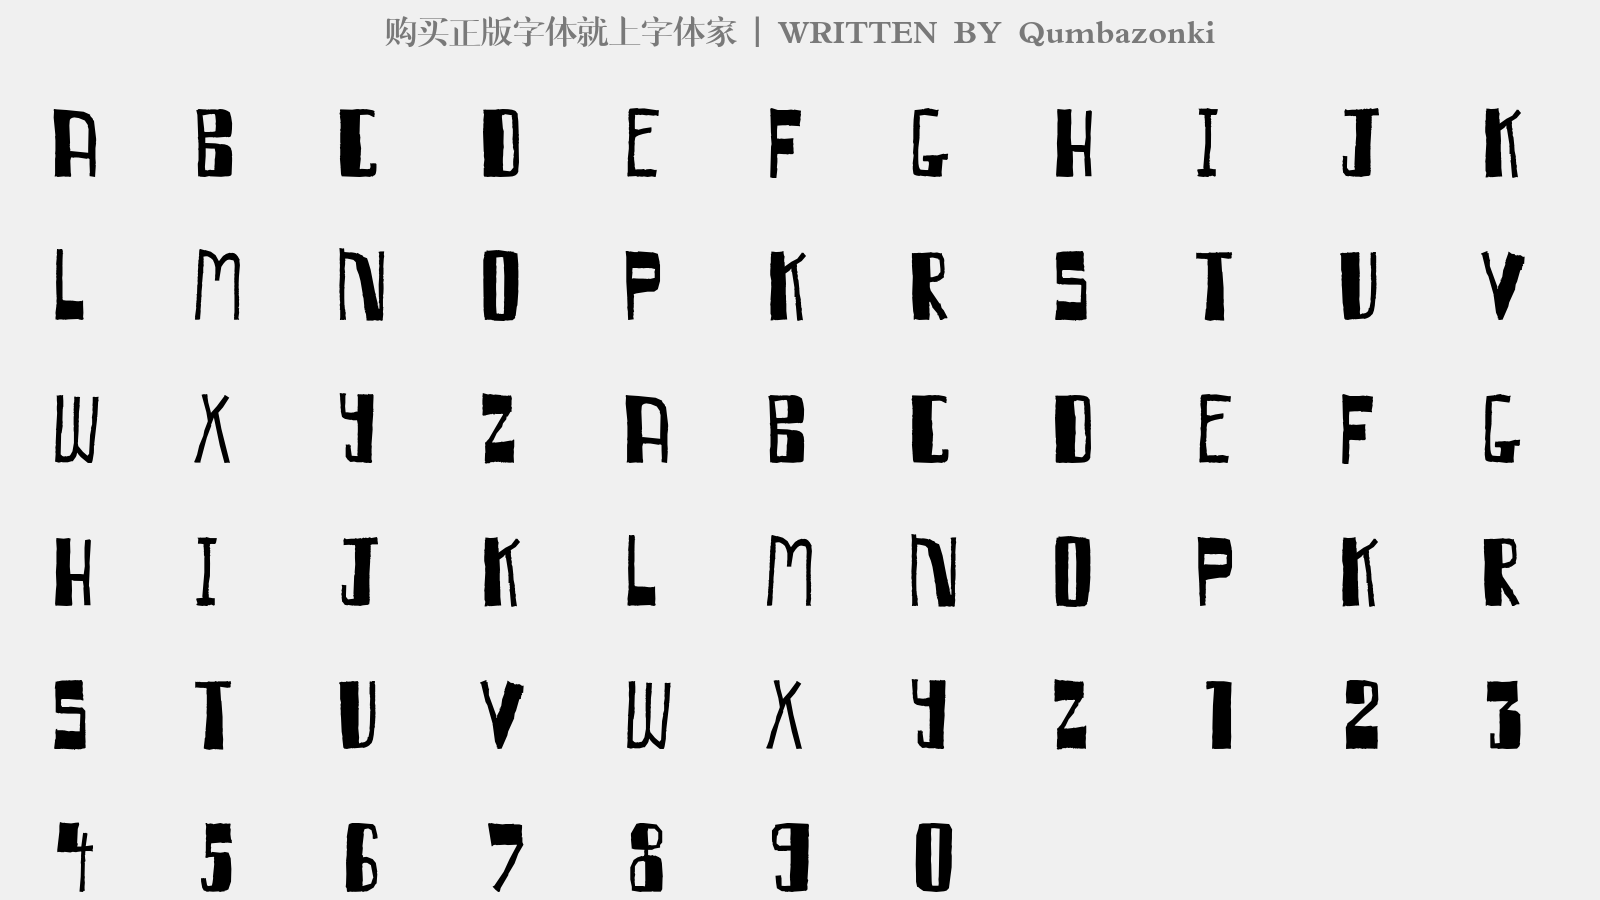 Qumbazonki - 大写字母/小写字母/数字